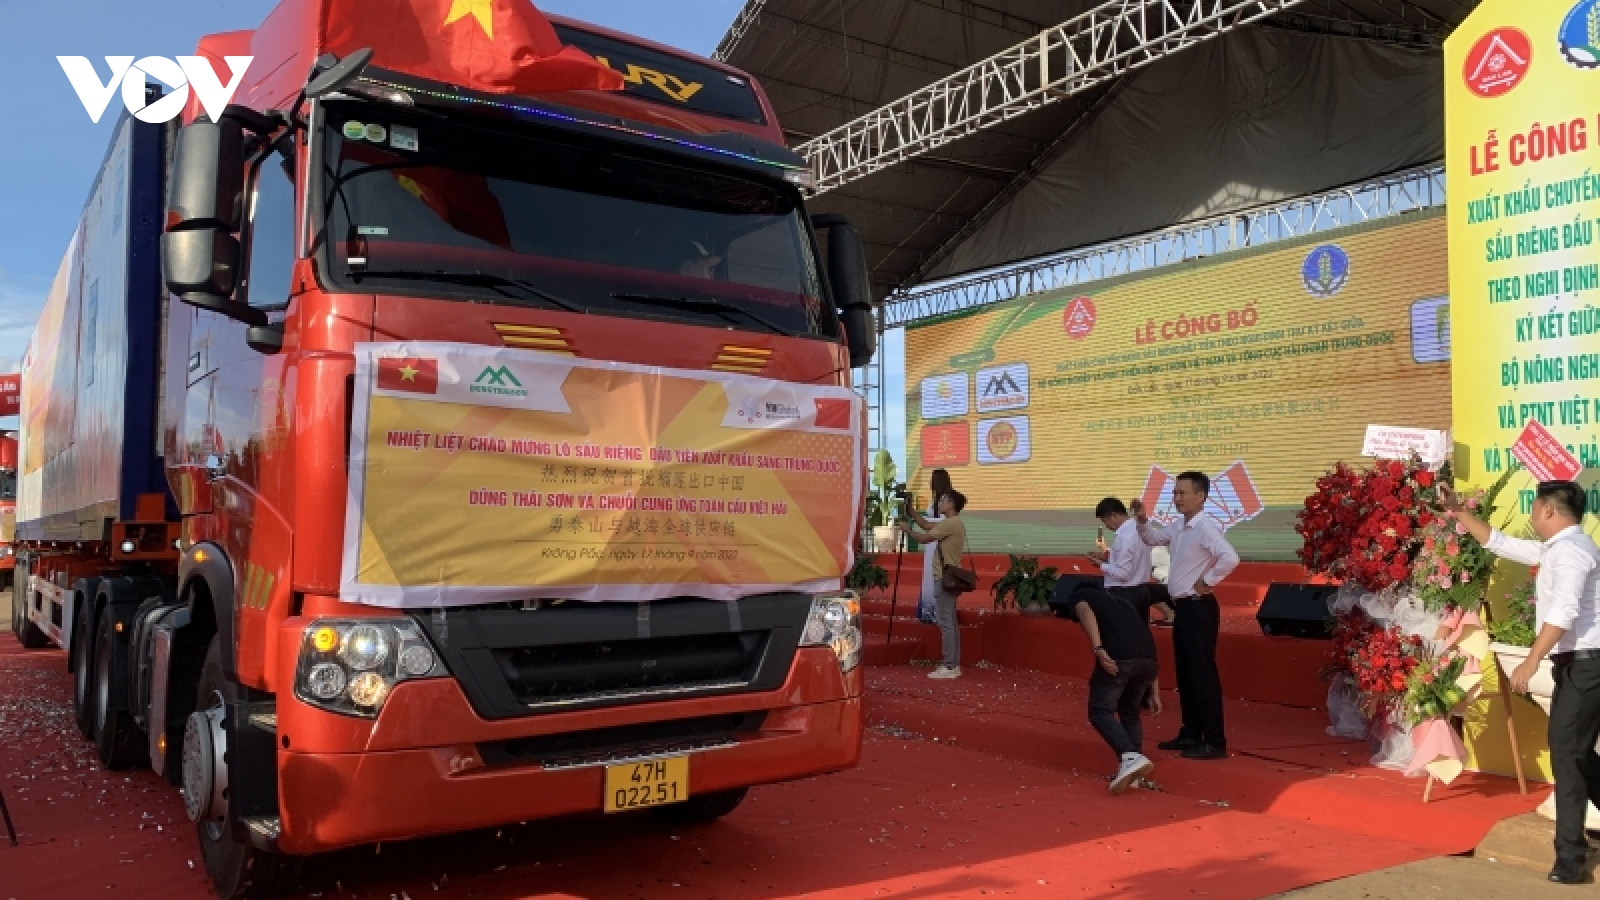 Lô hàng sầu riêng đầu tiên của Việt Nam xuất khẩu chính ngạch